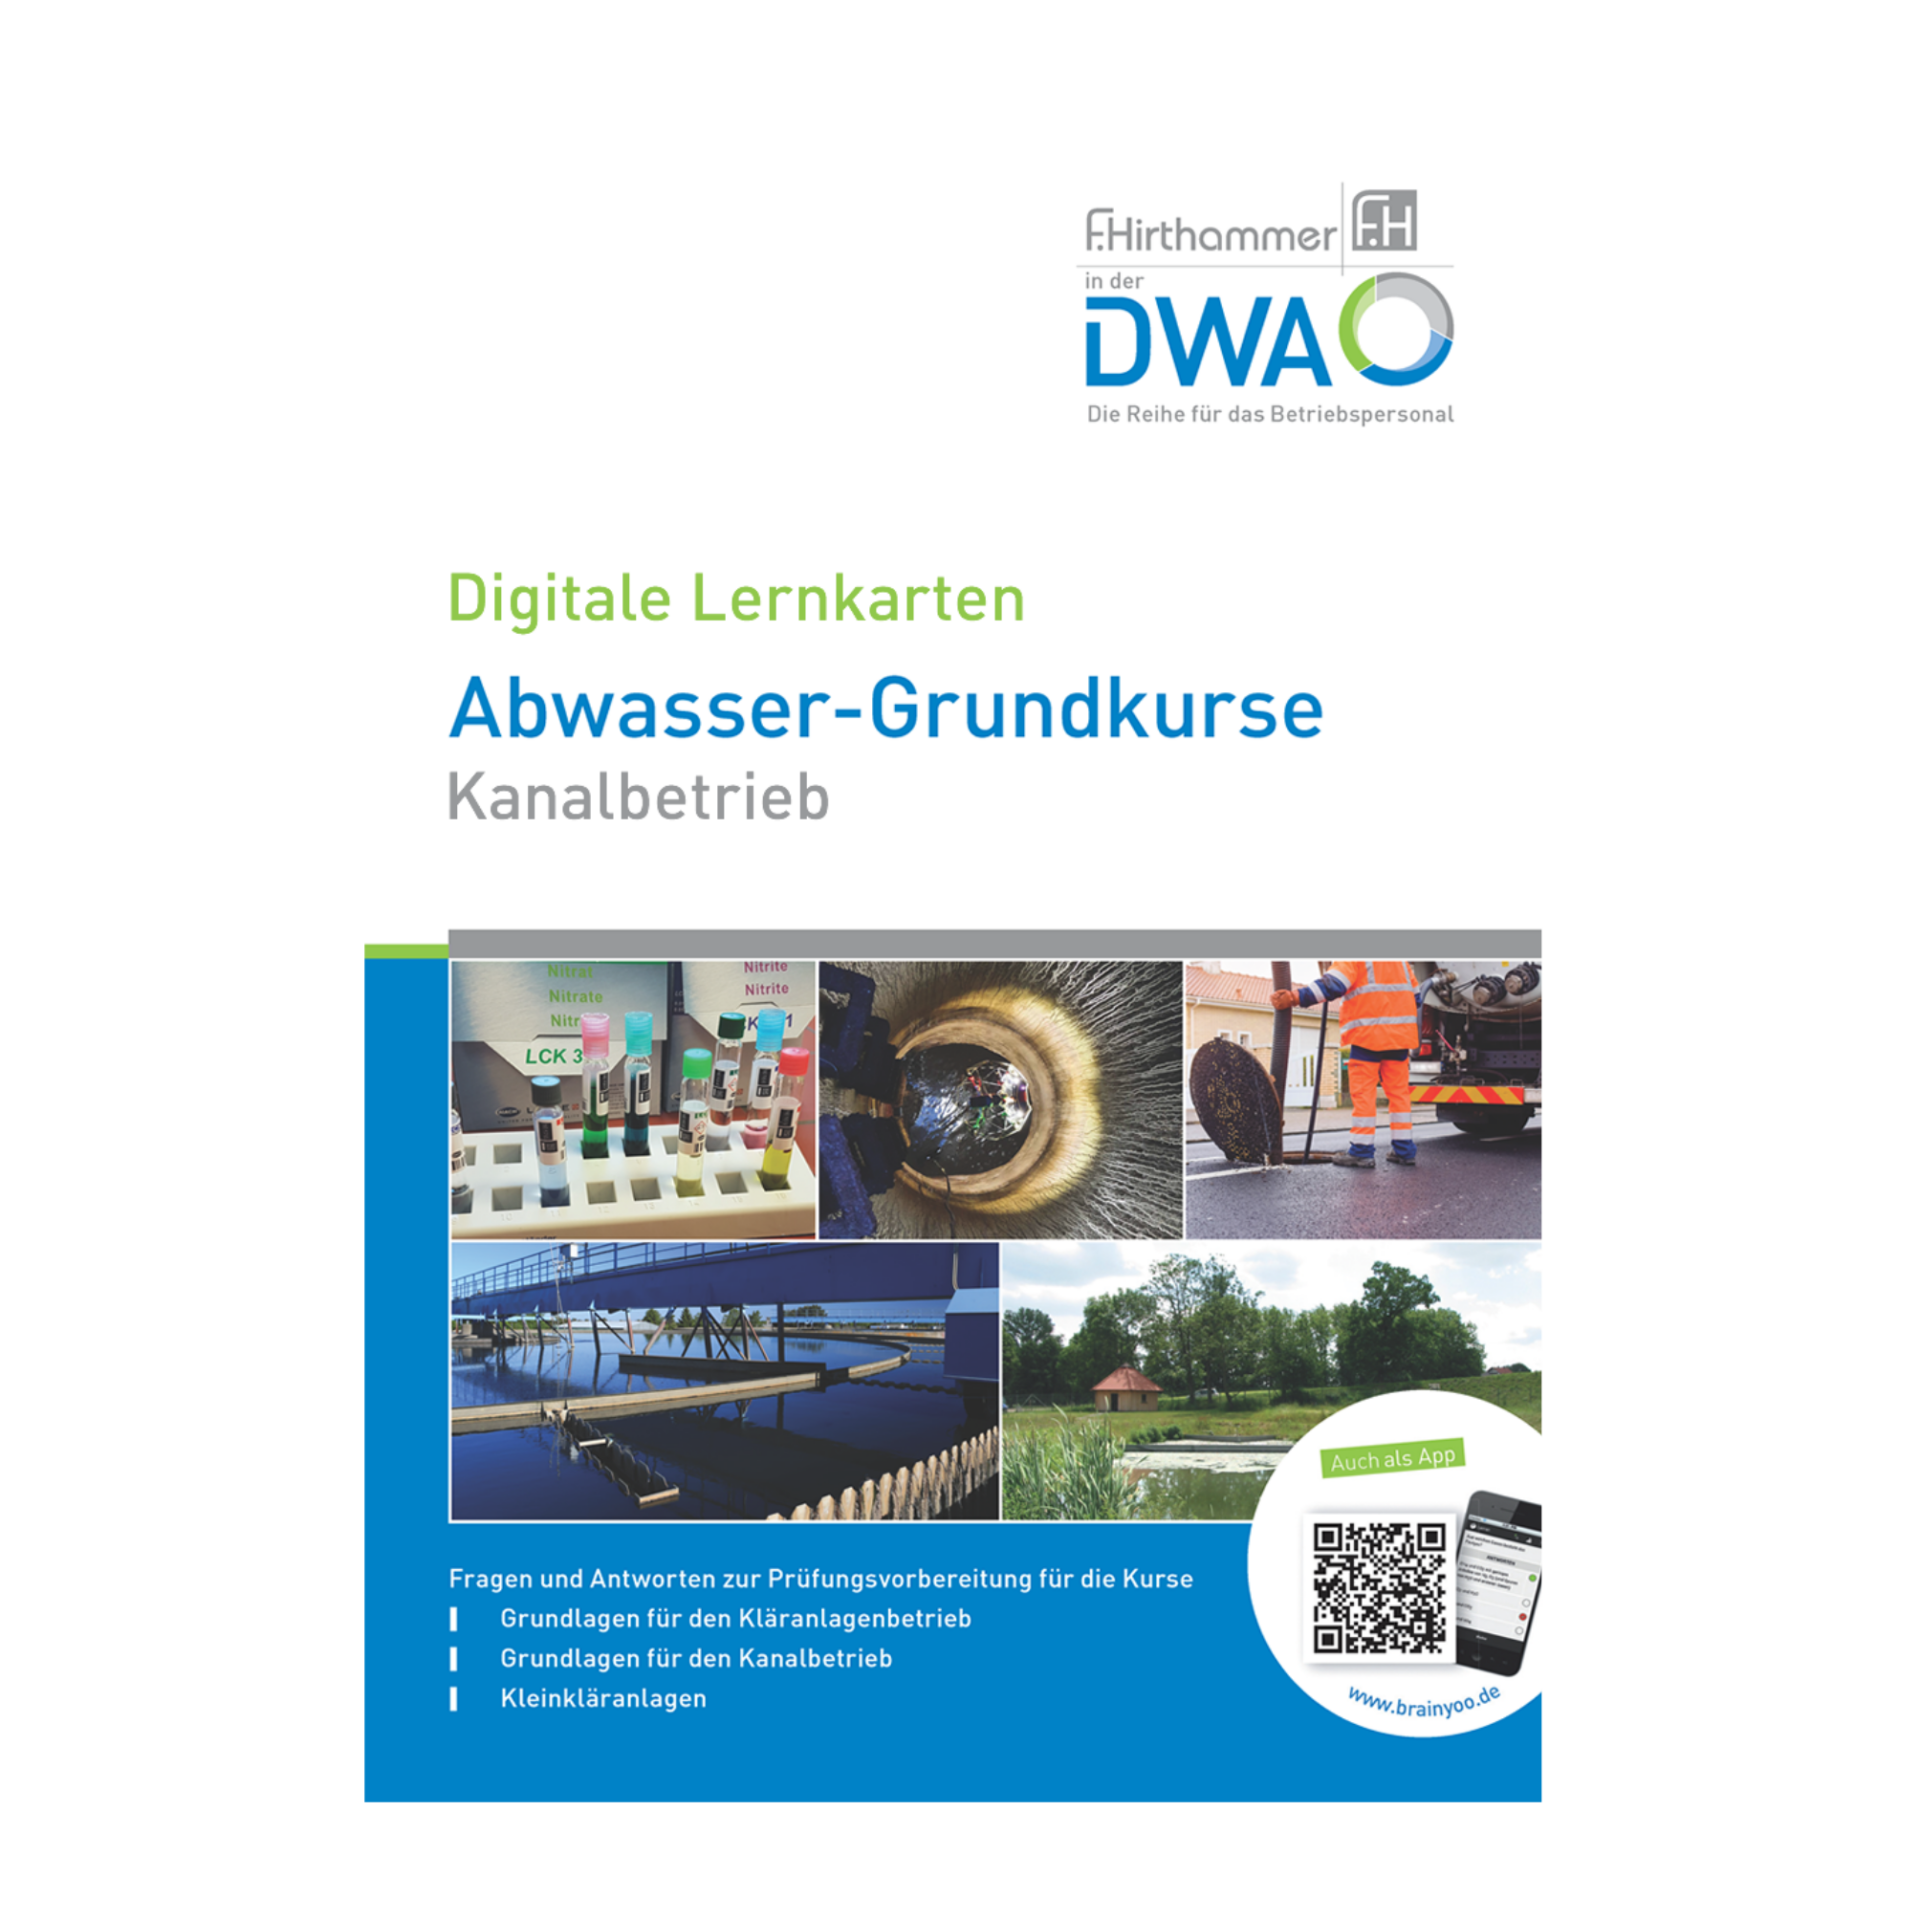 DWA Abwasser-Grundkurse Kanalbetrieb_final